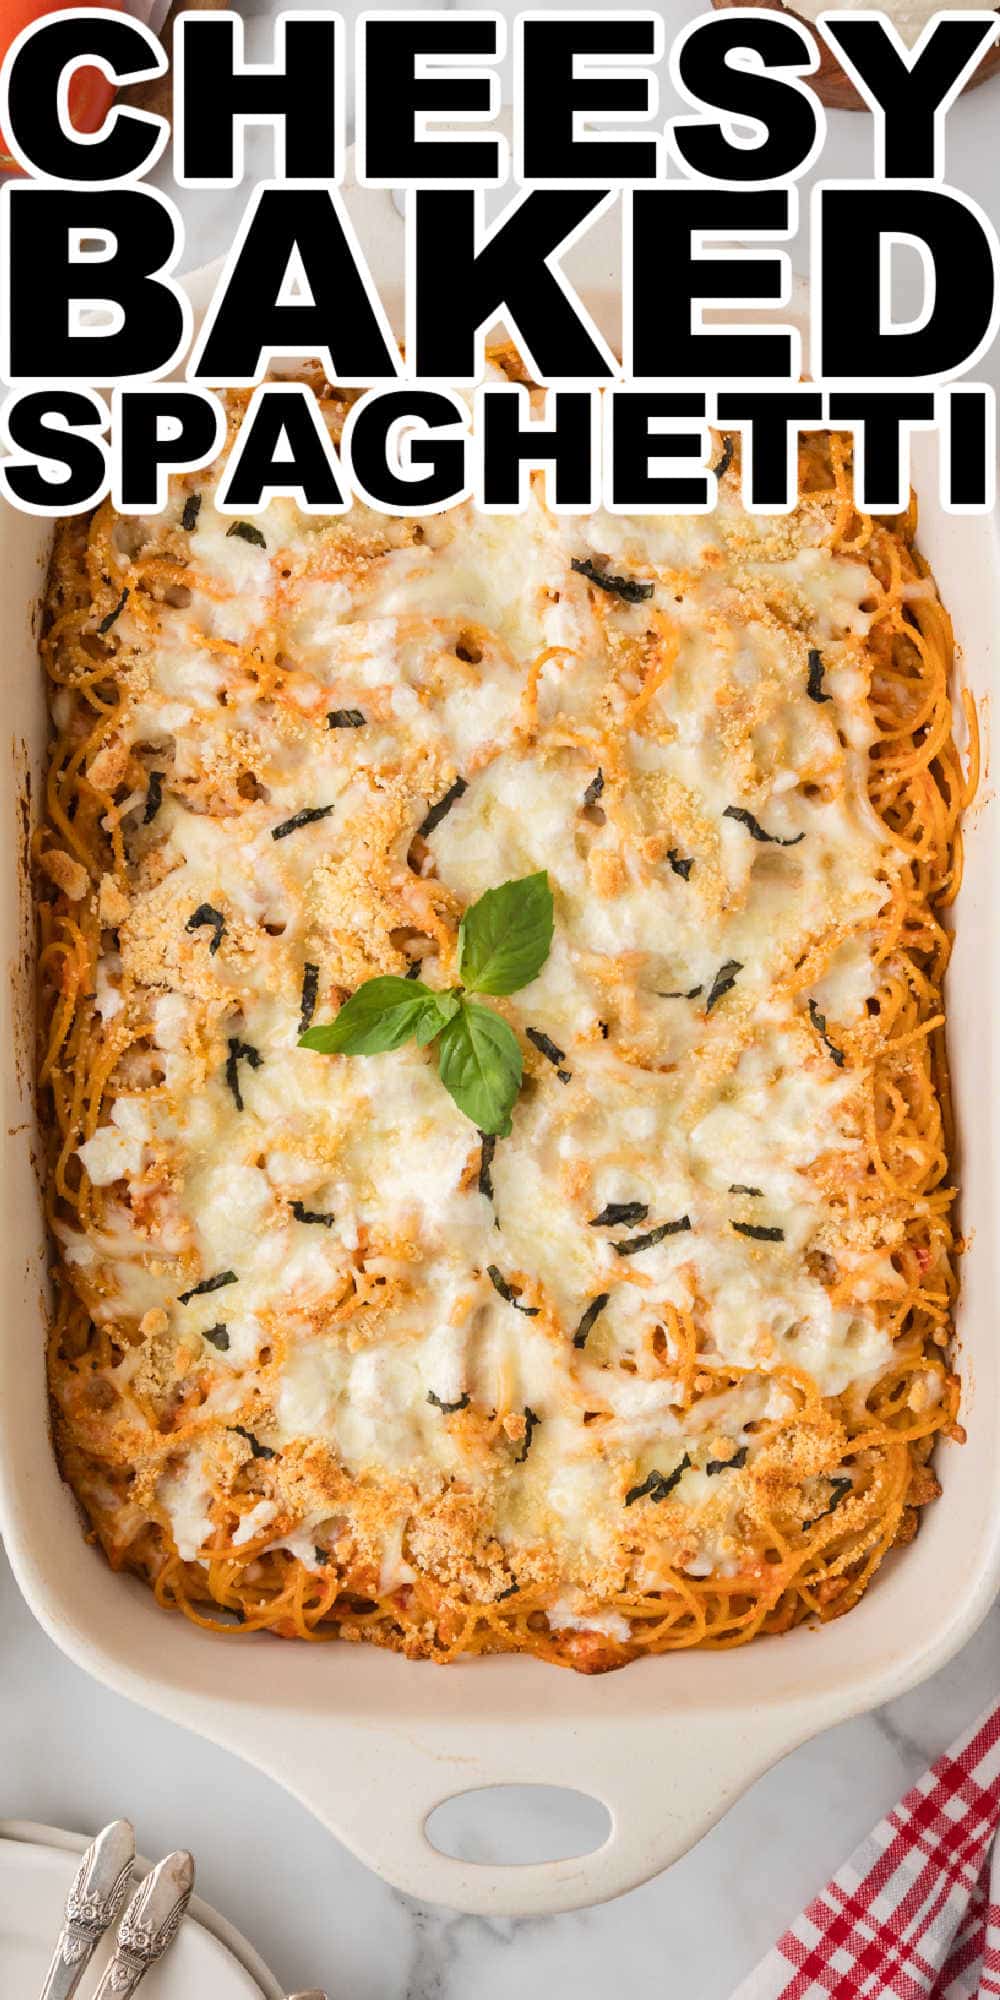 Easy Cheesy Baked Spaghetti Recipe